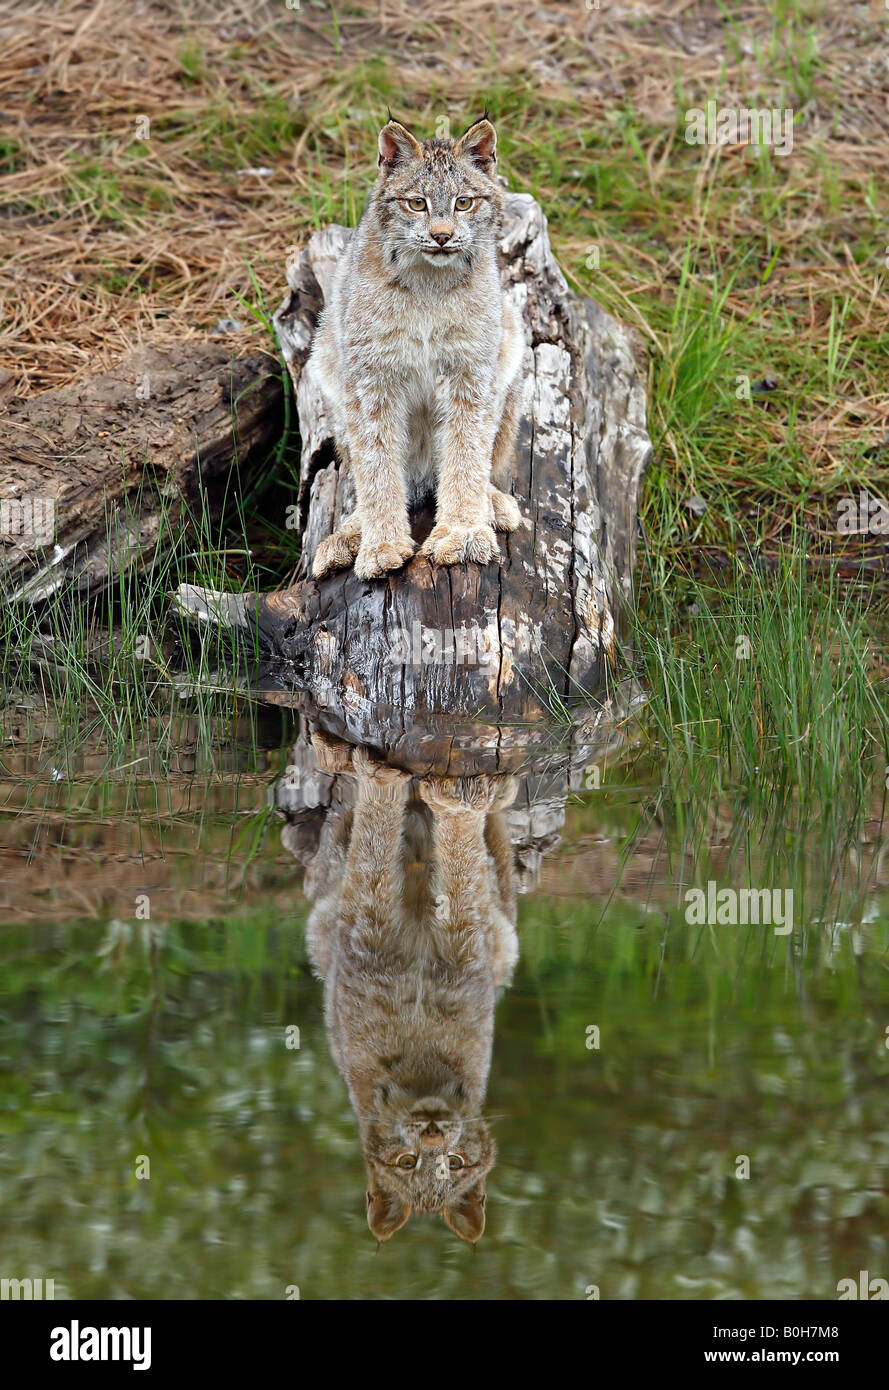 Les Lynx canadensis, réfléchissant sur l'eau, Big cat Banque D'Images